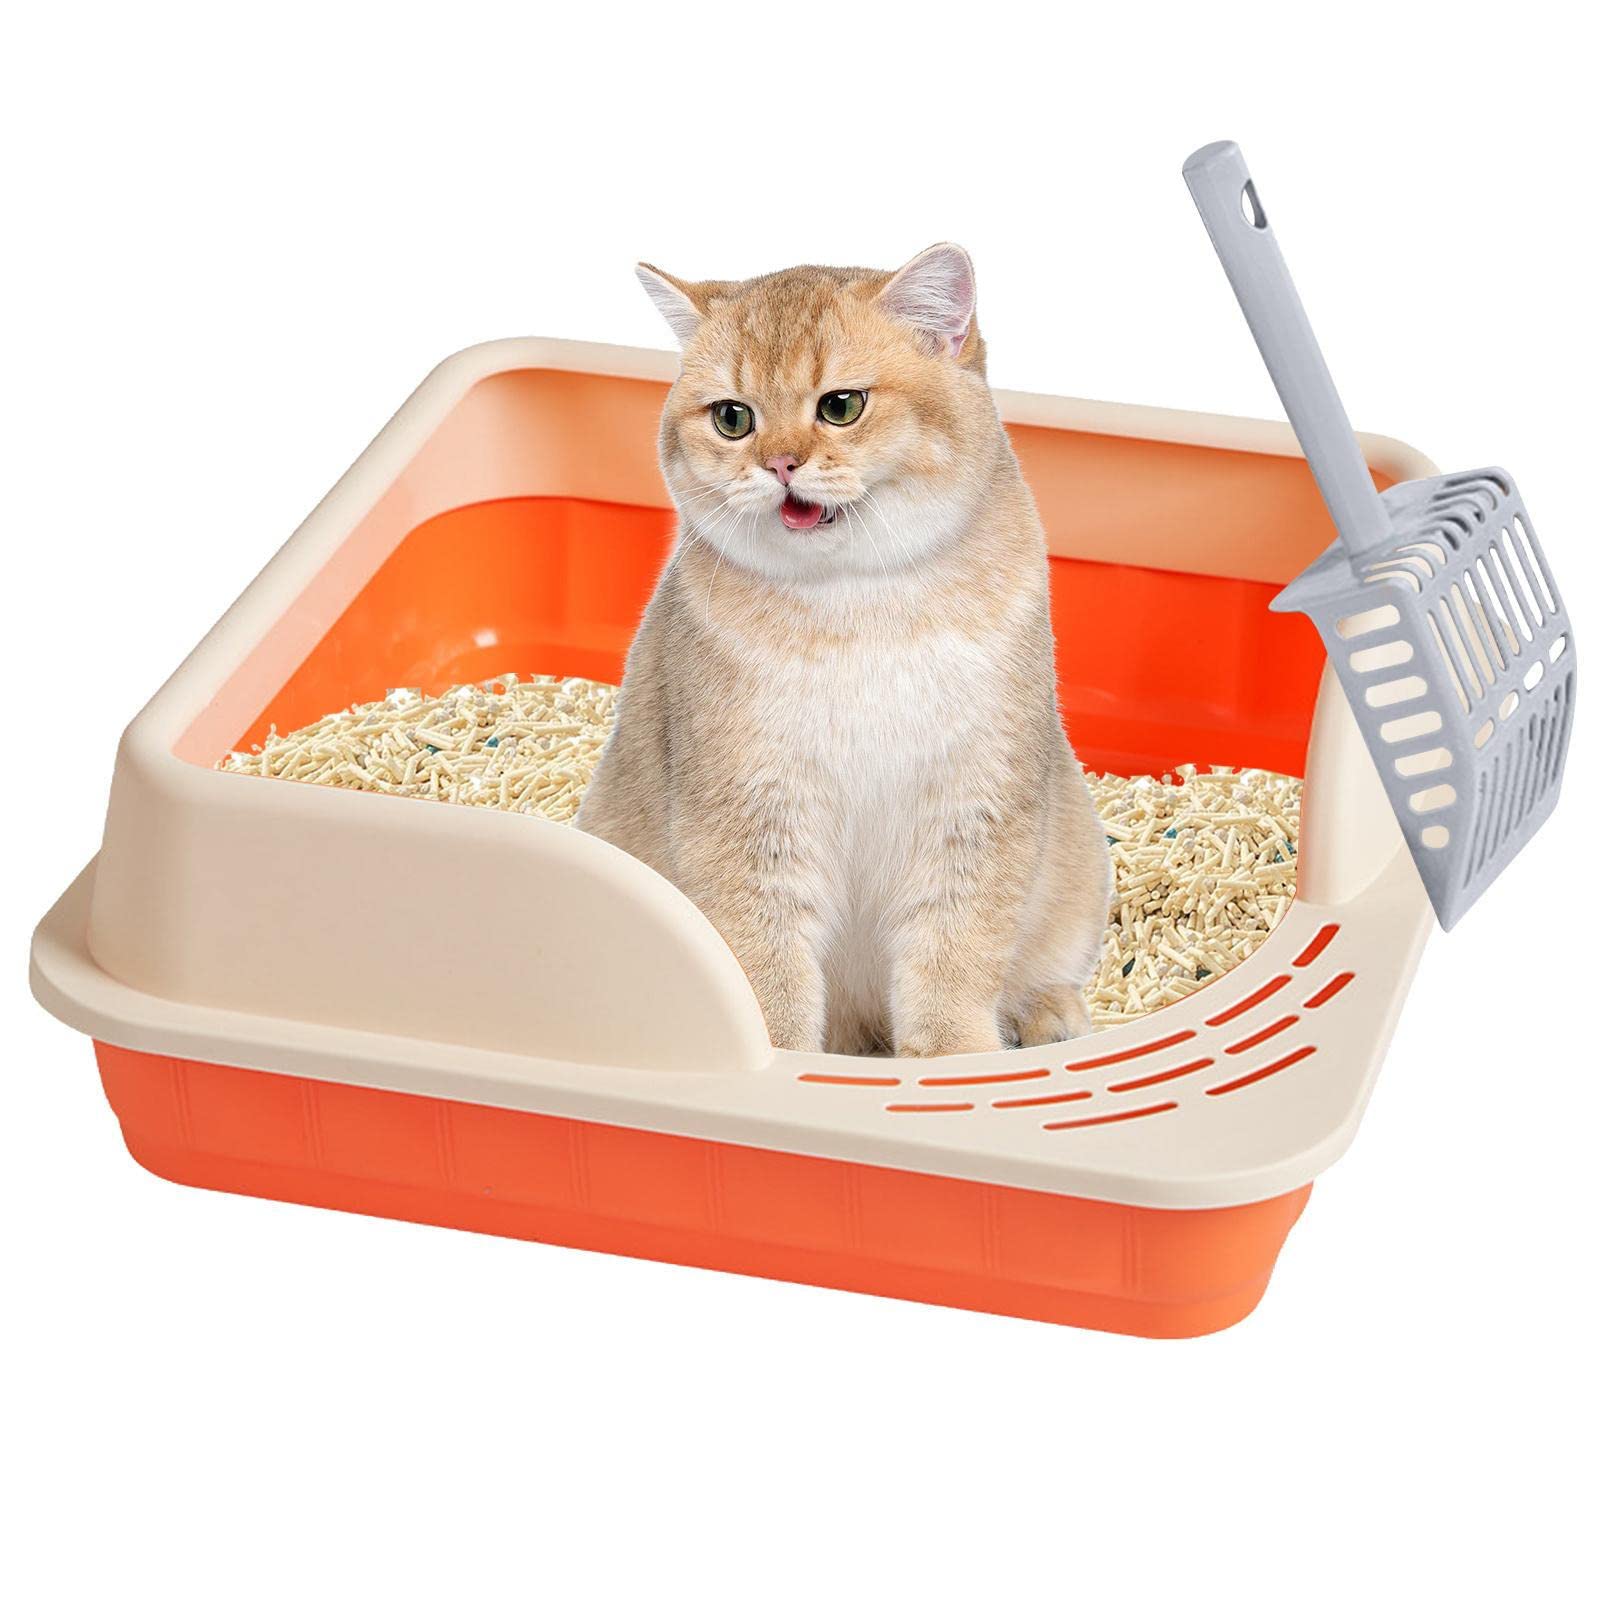 Katzentoilette - Siebdesign Verbreiterte auslaufsichere Pedale Katzenstreusystem | Einfach zu montierendes Reise-Katzenklo mit Katzenklo-Schaufel für Kätzchen, ältere Katzen Cypreason